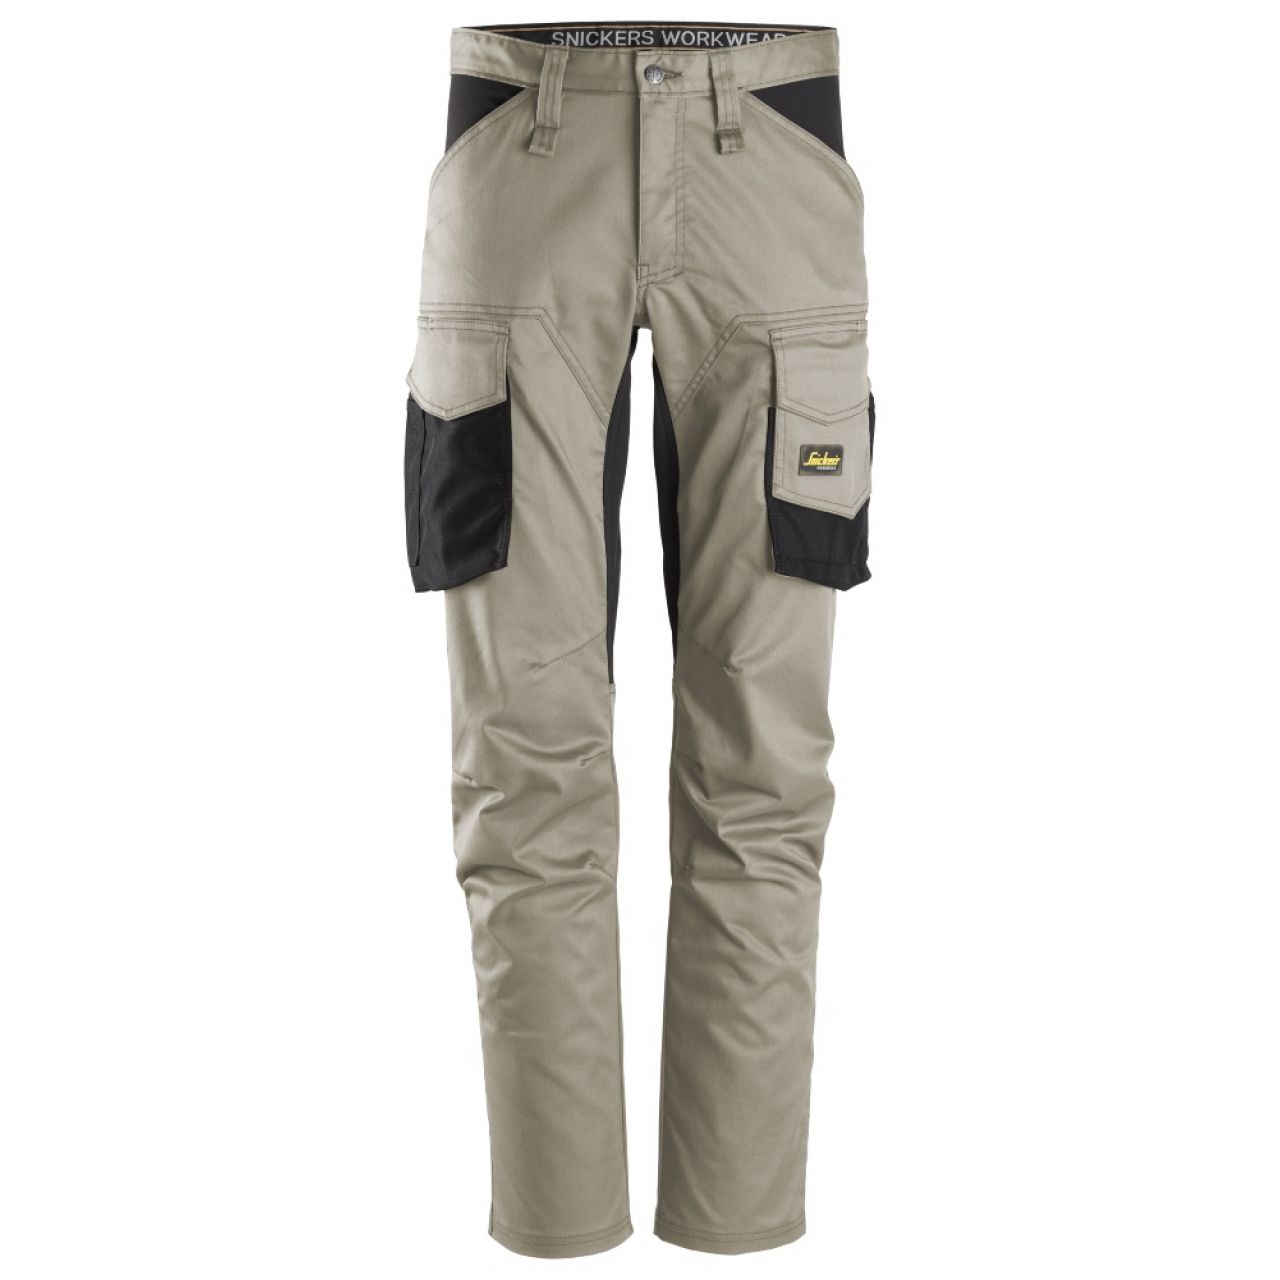 6803 Pantalones largos de trabajo elásticos sin bolsillos para las rodilleras AllroundWork beige-negro talla 88